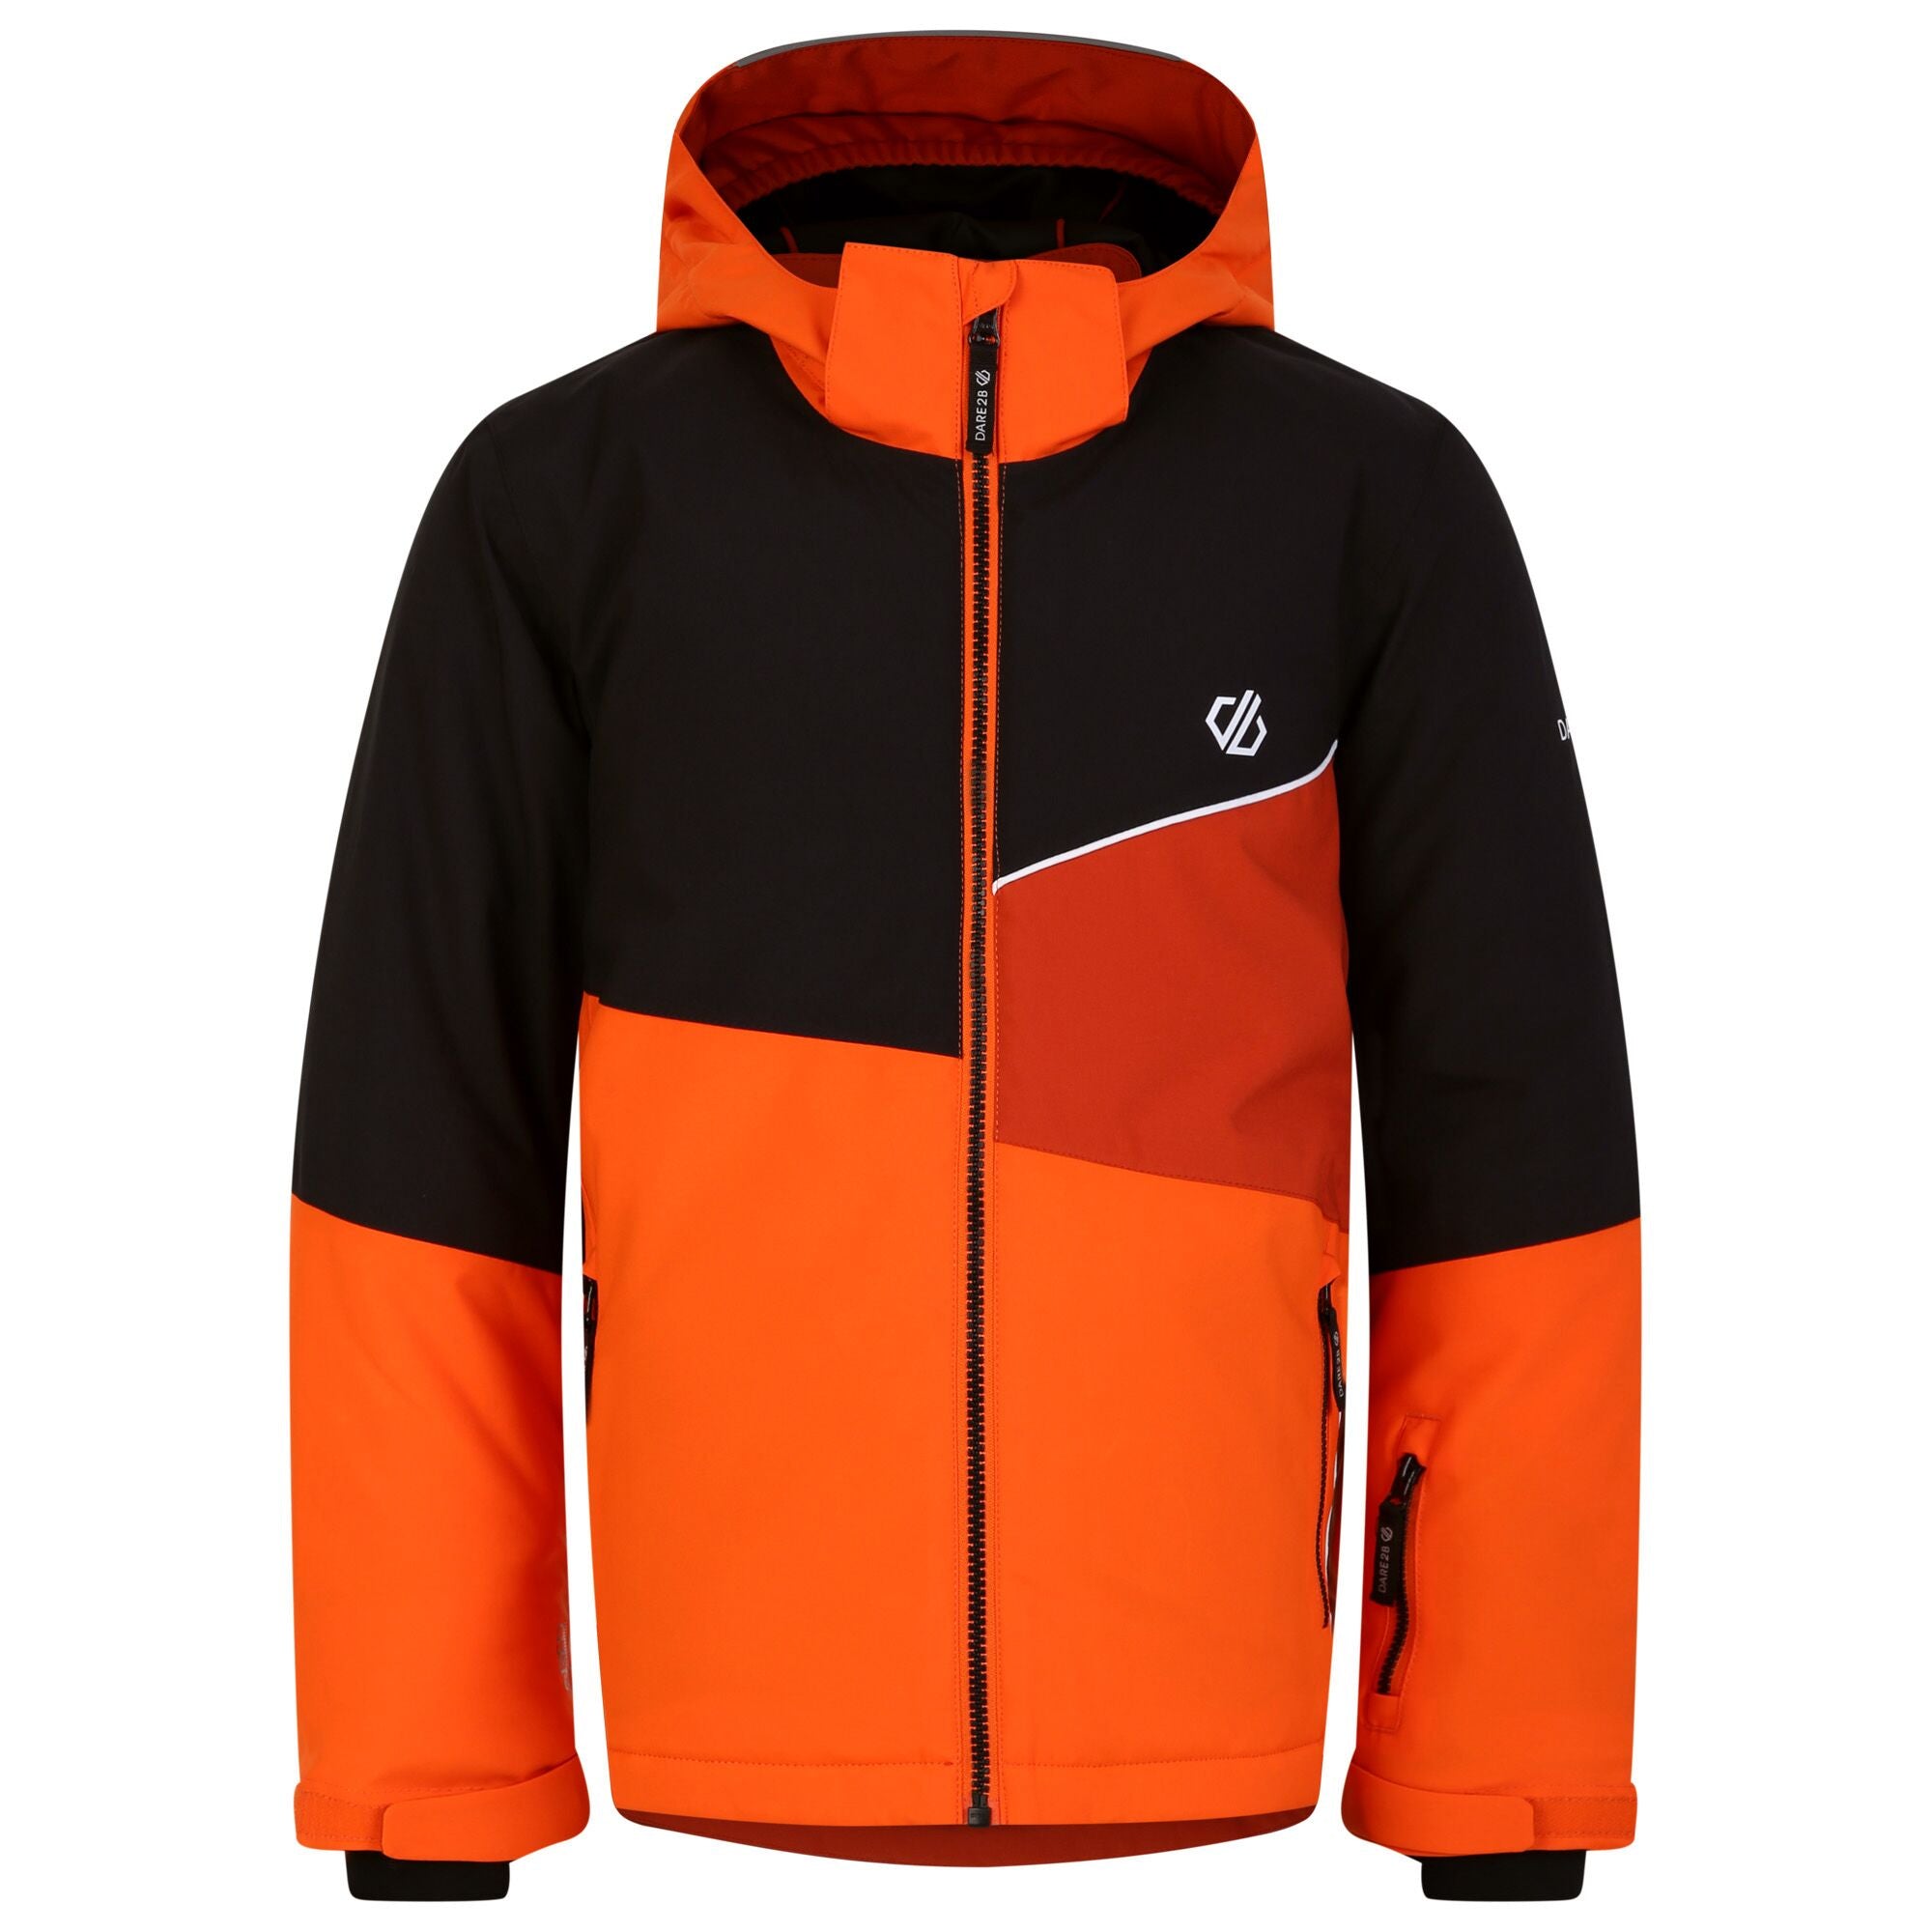 - reflektierenden Skijacke - Kinder Details Sportrabatt Orange-Schwarz - Steazy Jacket Skijacke - €62,99 mit Kinder - |